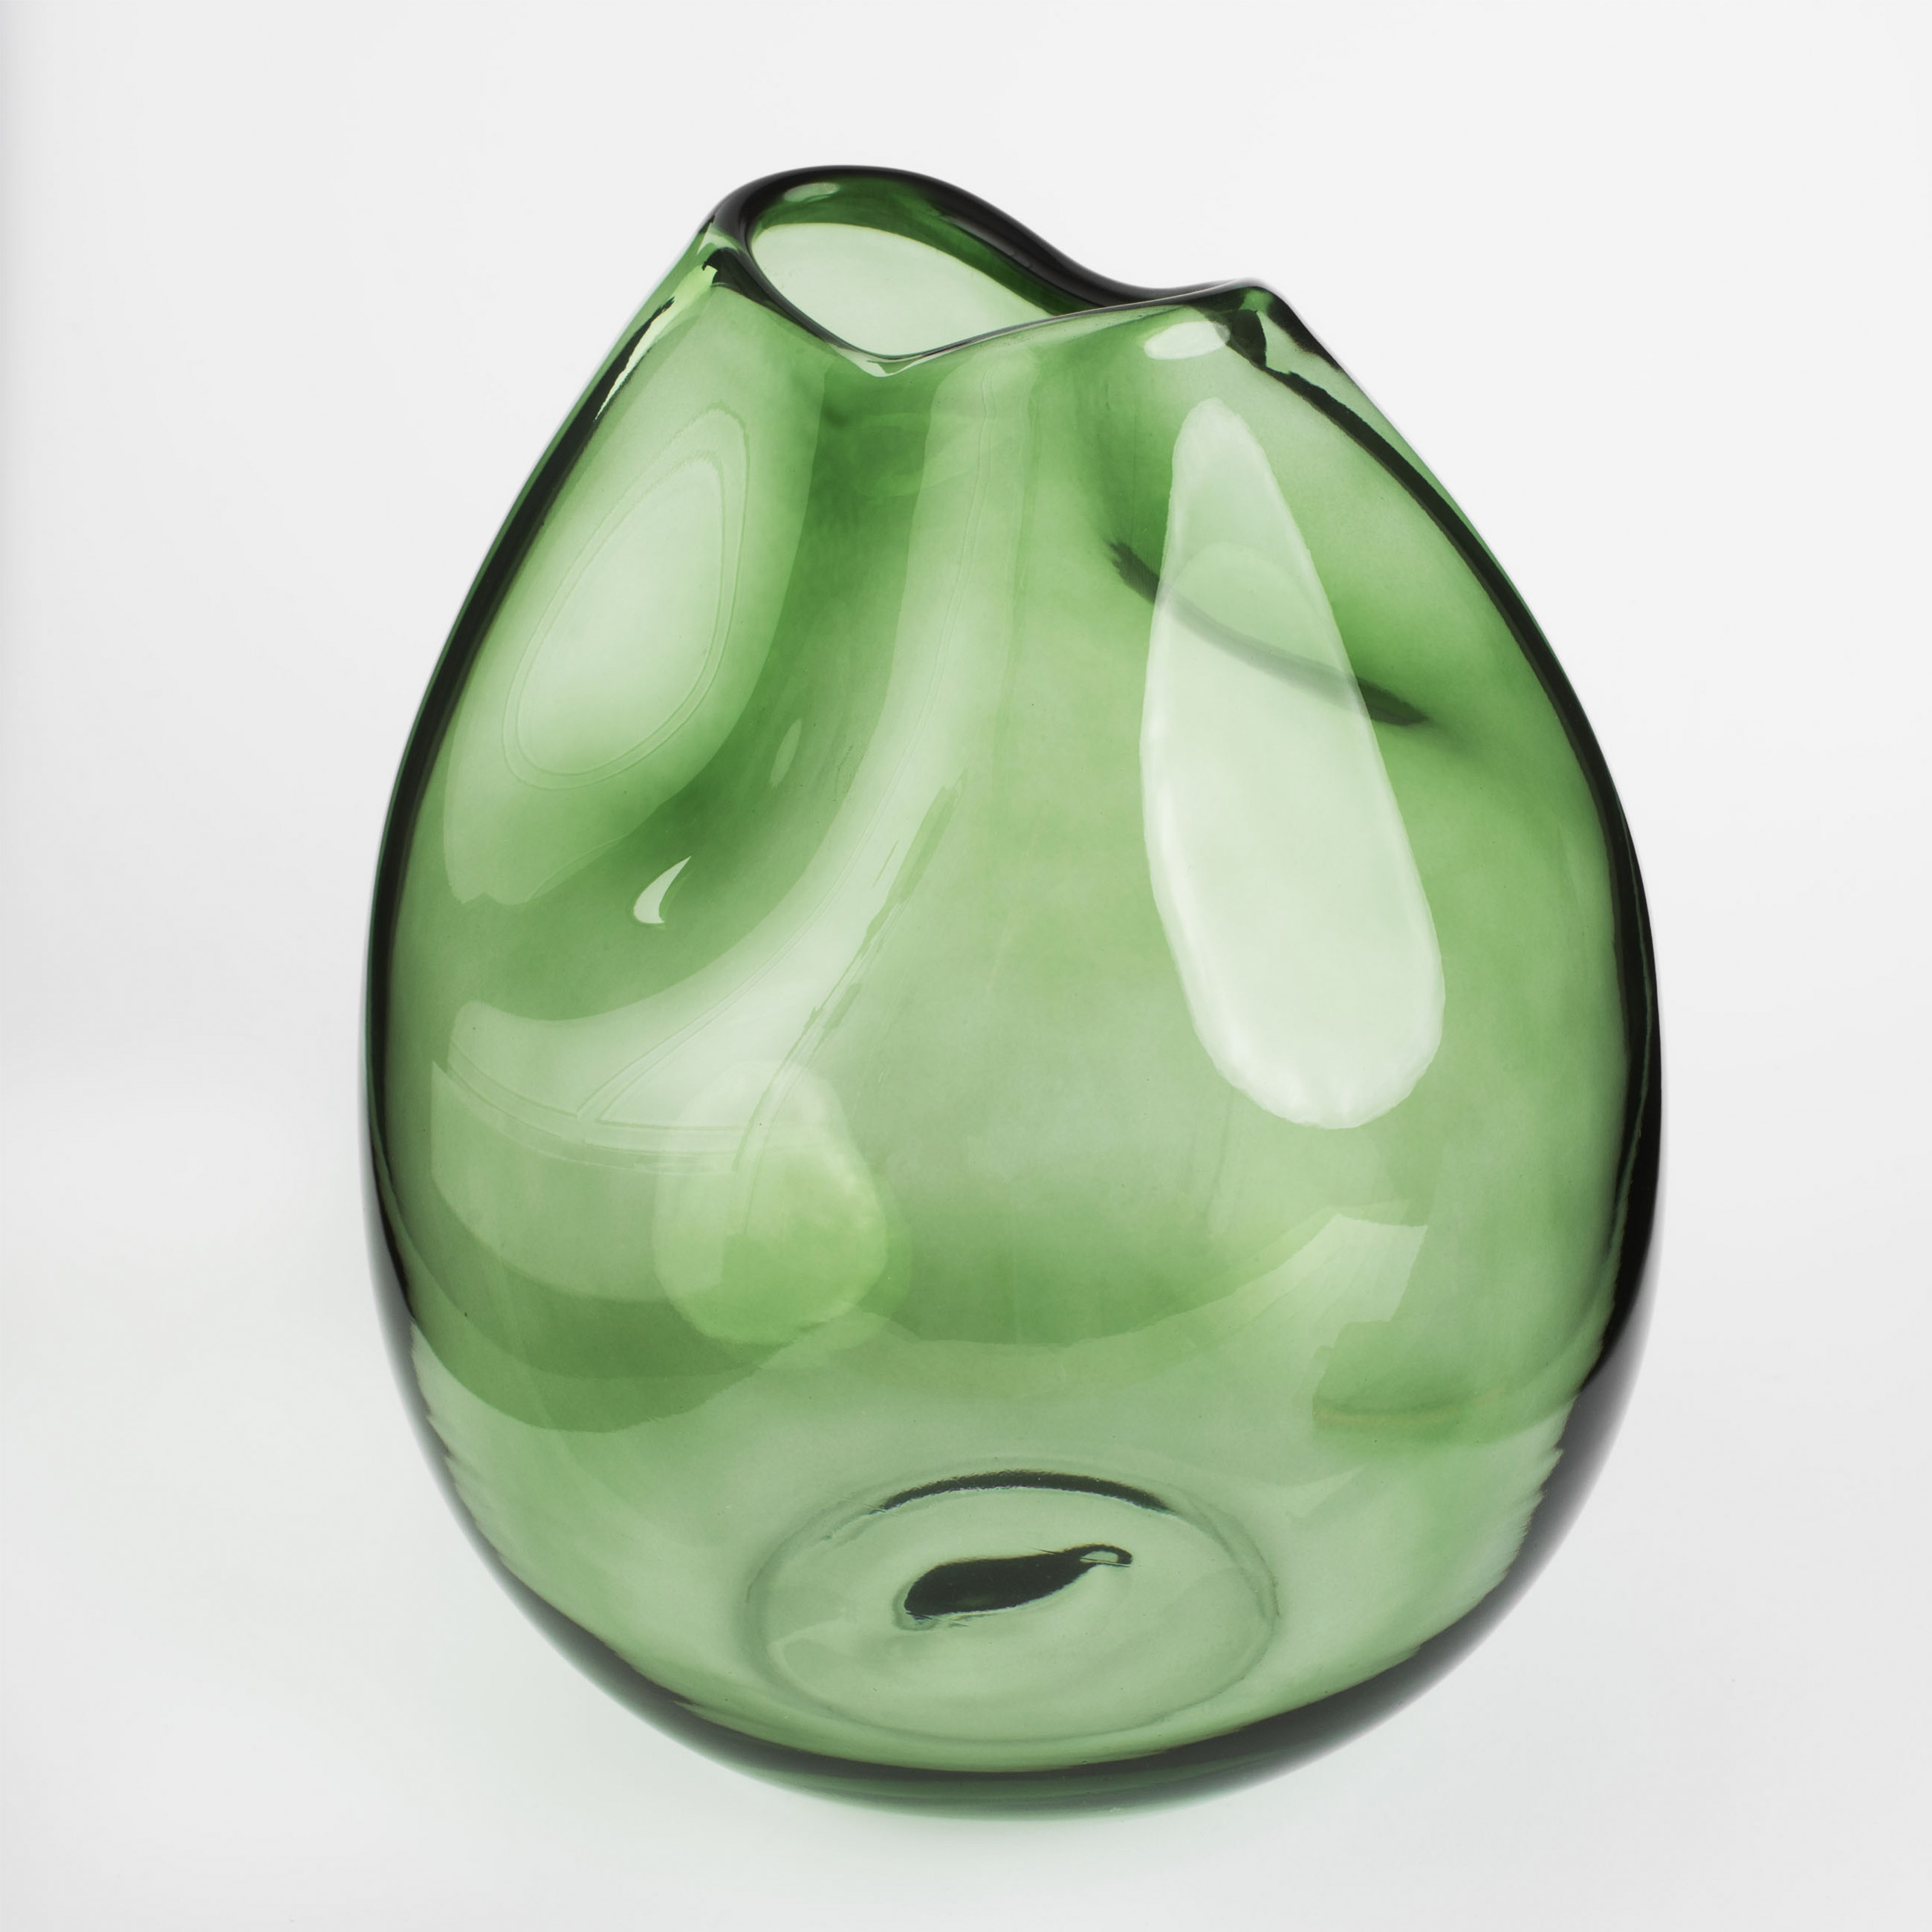 Flower vase, 25 cm, glass, green, Clear color изображение № 2